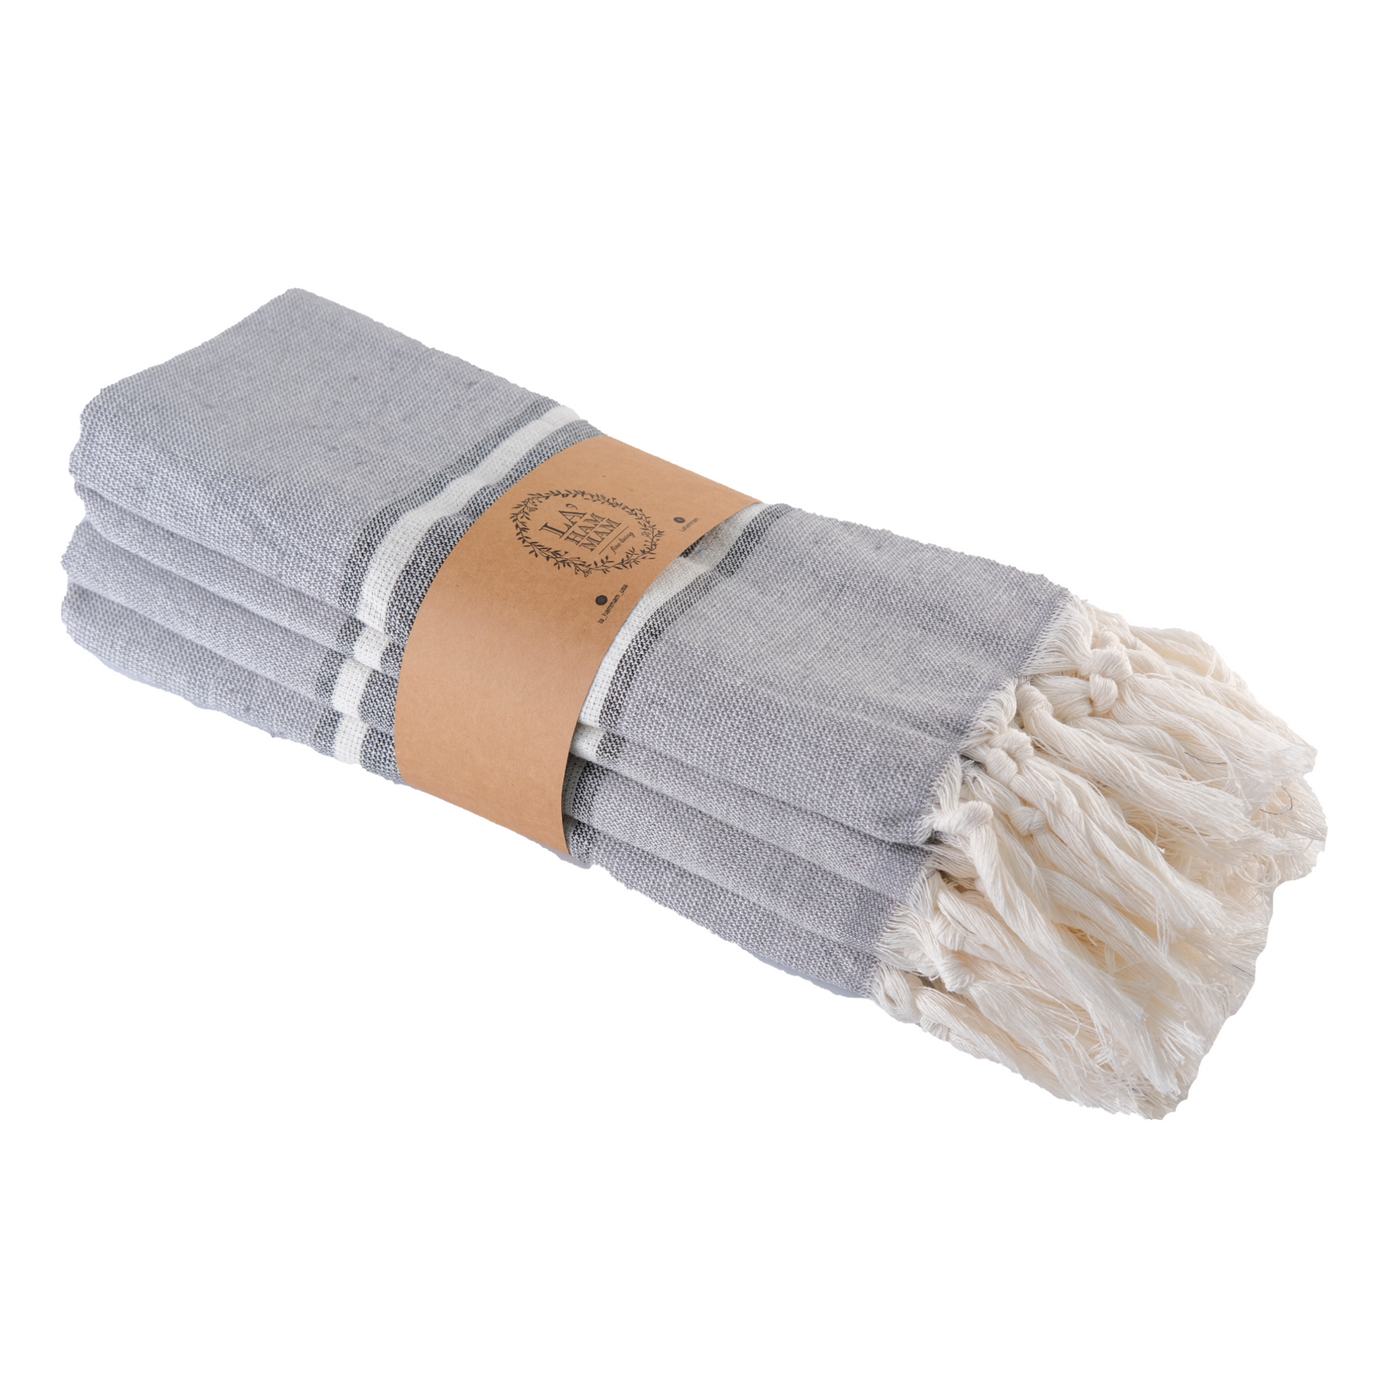 Smyrna Turkish Hand / Kitchen Towel 4 pack 23x17in by La'Hammam